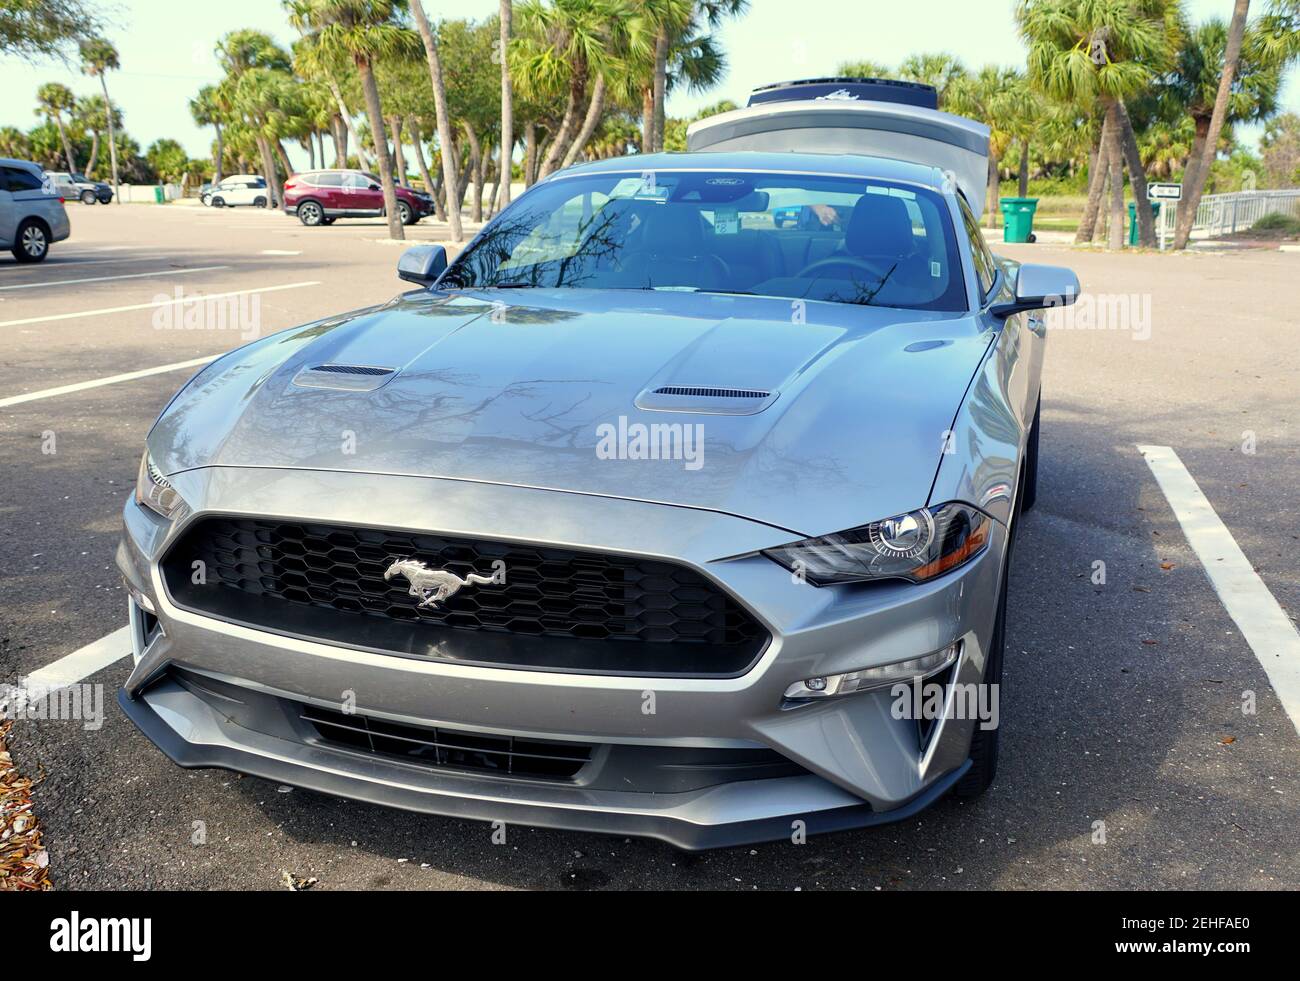 Saint-Pétersbourg, Floride, États-Unis - 16 février 2021 - UNE toute nouvelle Ford Mustang 2021 de couleur argent avec le coffre ouvert Banque D'Images